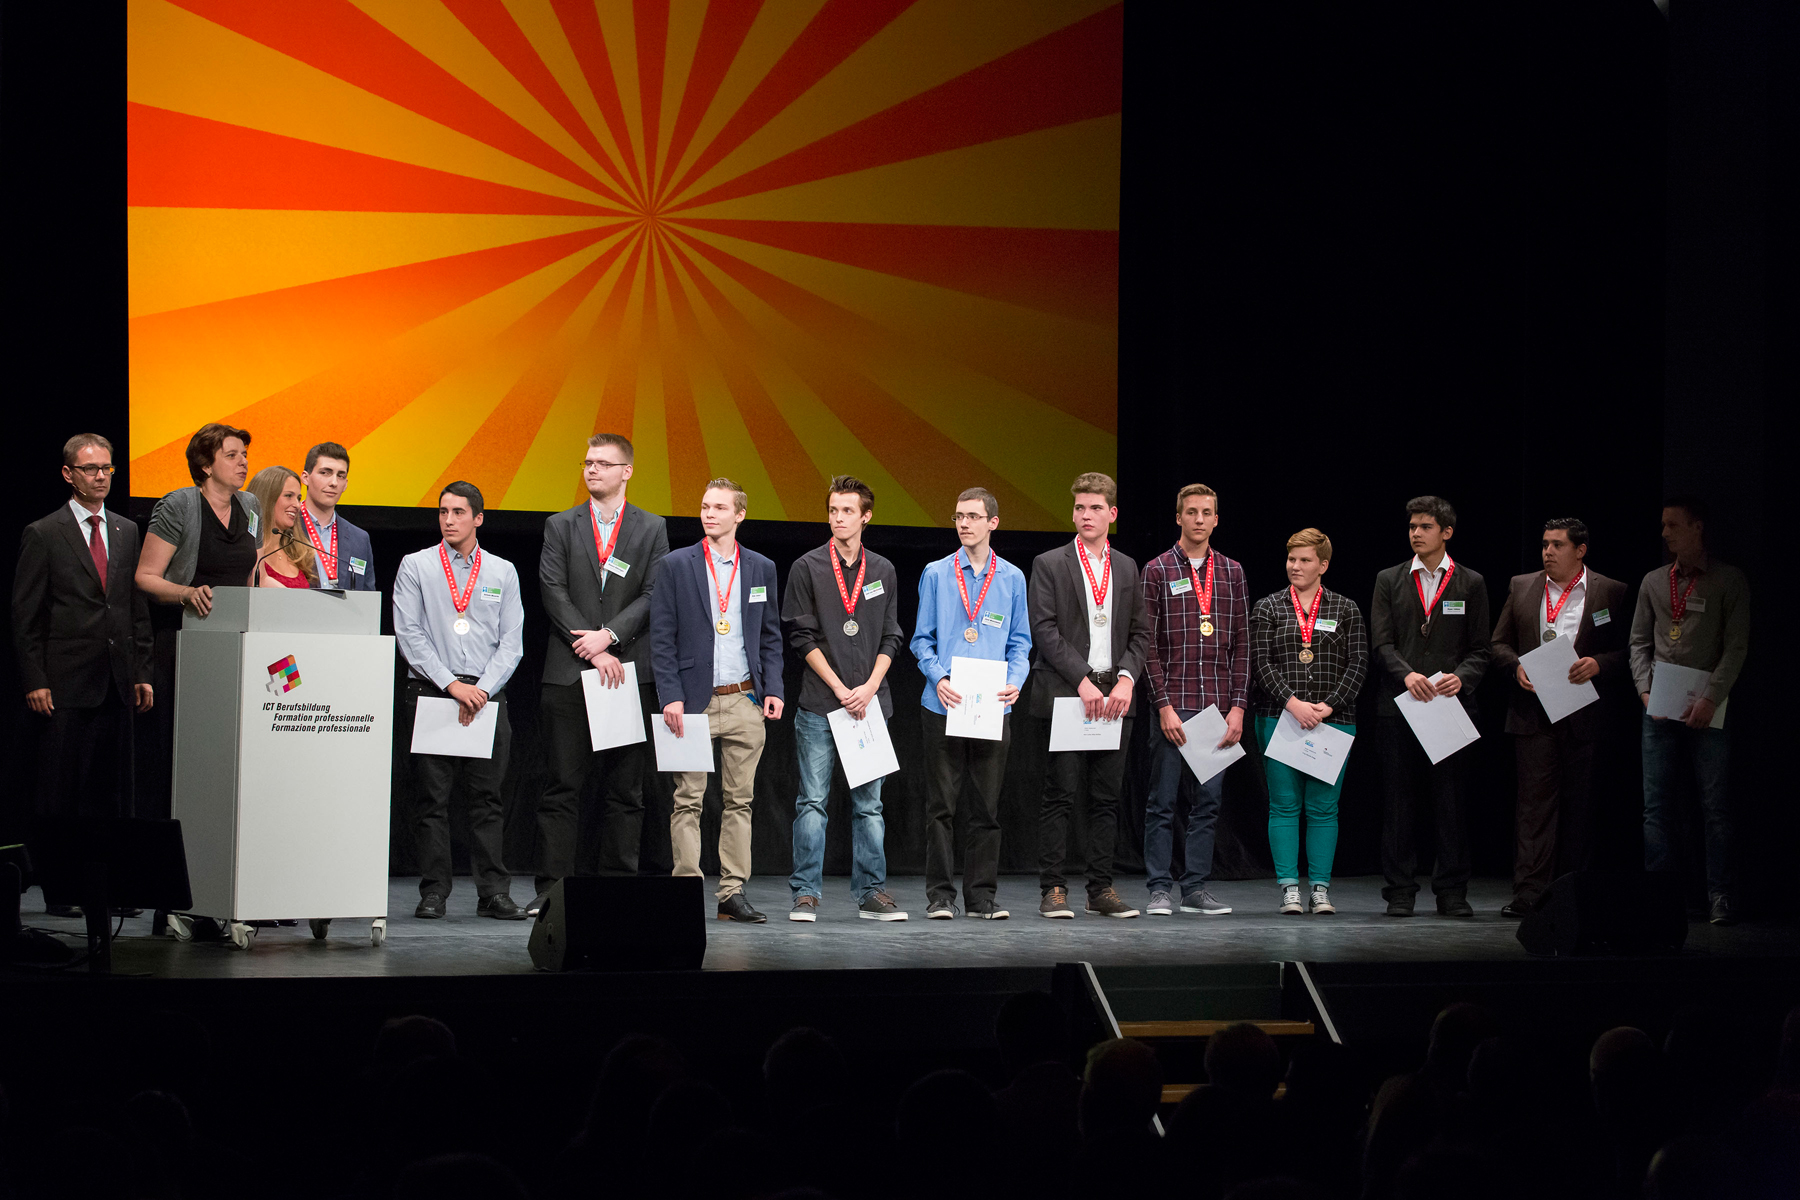 Gewinner der Berufsmeisterschaften ICTskills 2016 ausgezeichnet